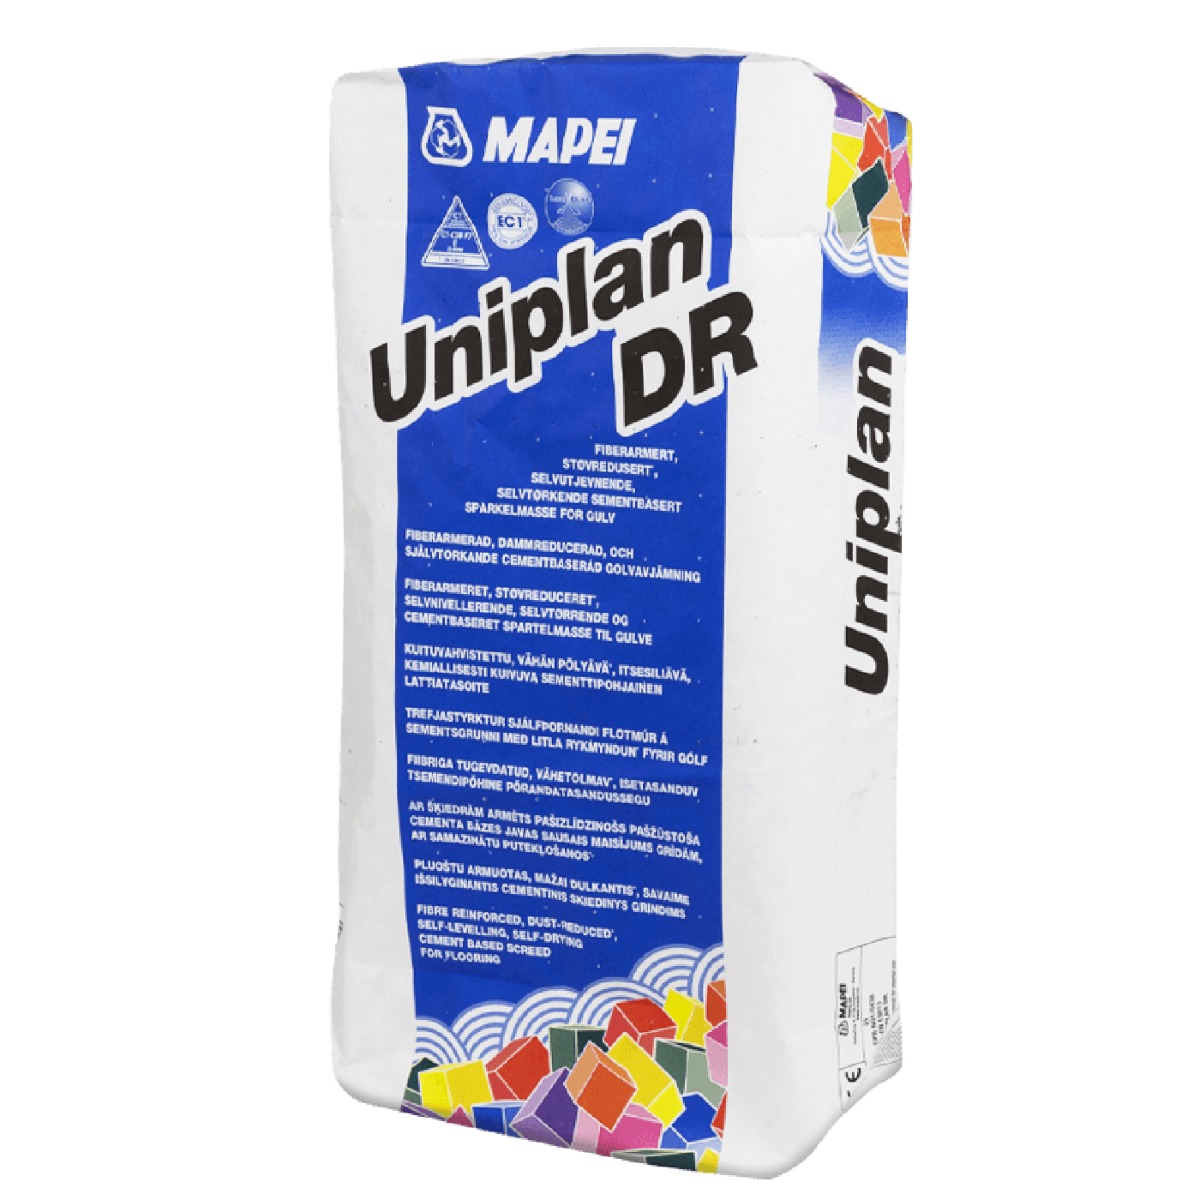 Avjämningsmassa Uniplan DR 20 kg